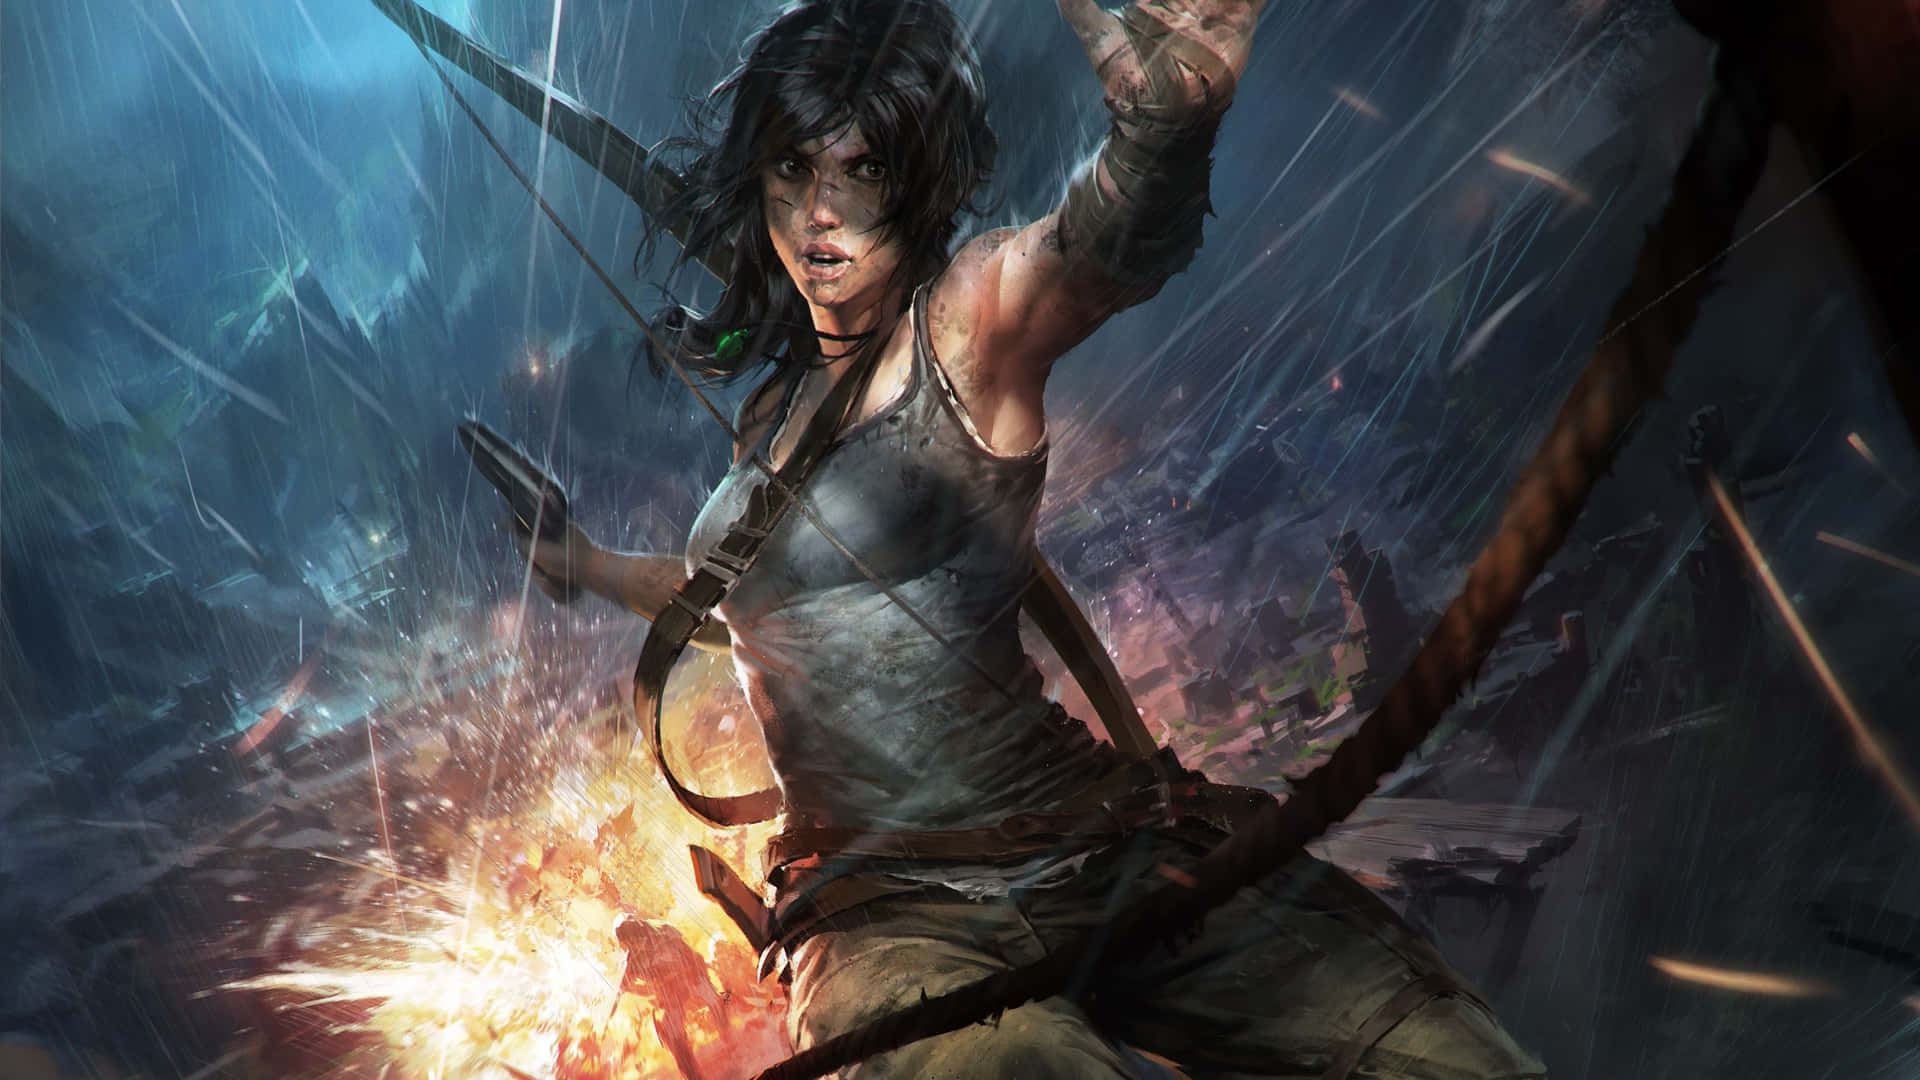 Tomb Raider er i luften med bue og pil.